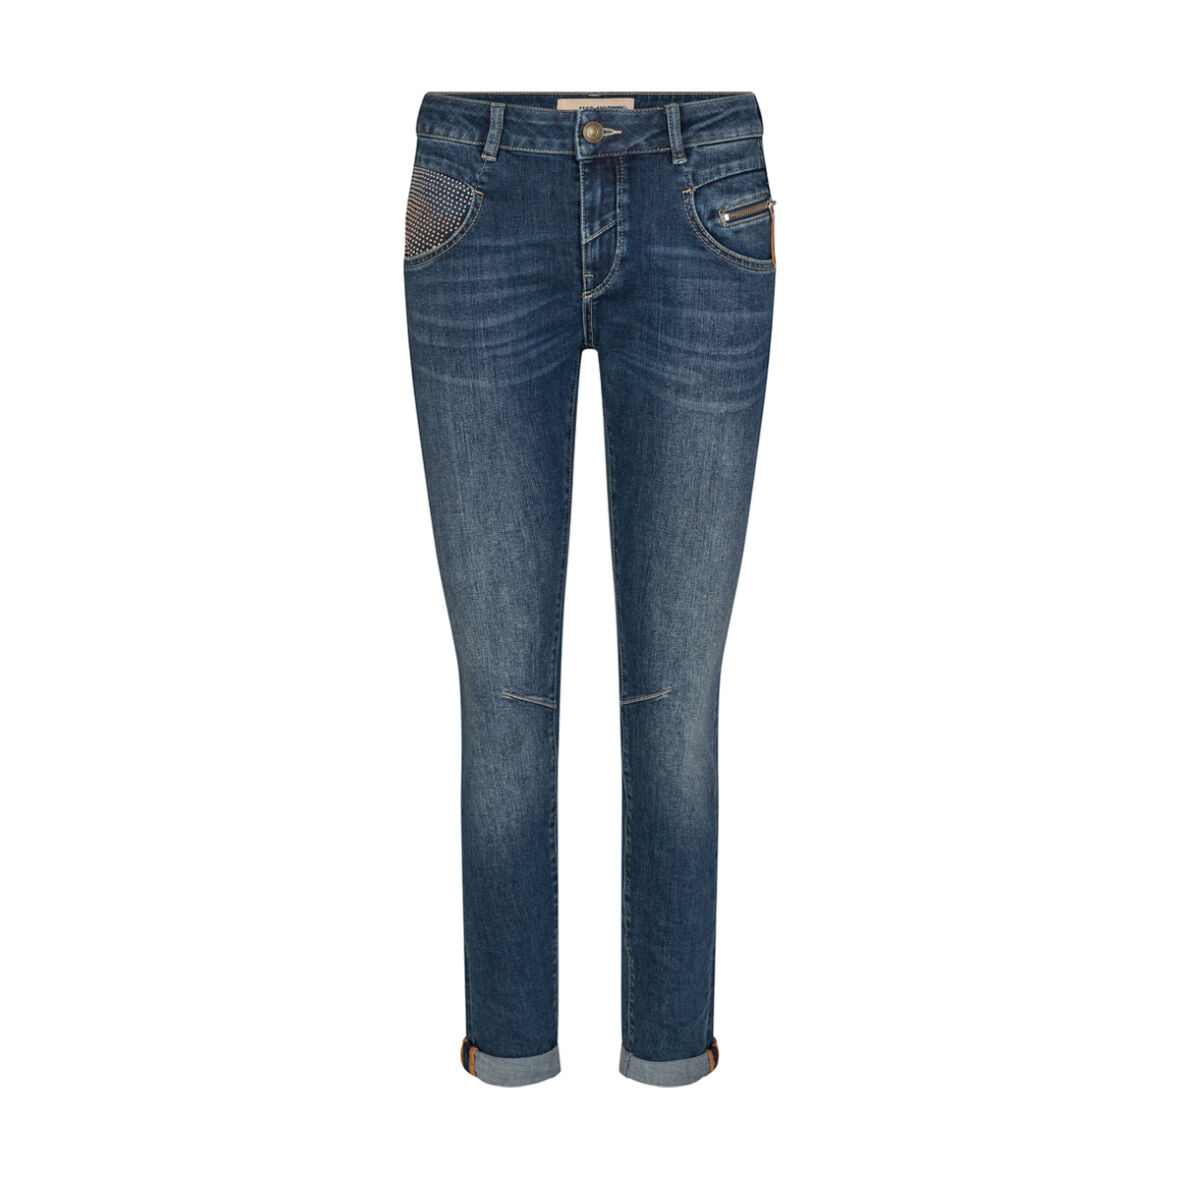 MOS MOSH - ReLoved Jeans 137060 - Jydepotten.dk - Fragt Over 499,